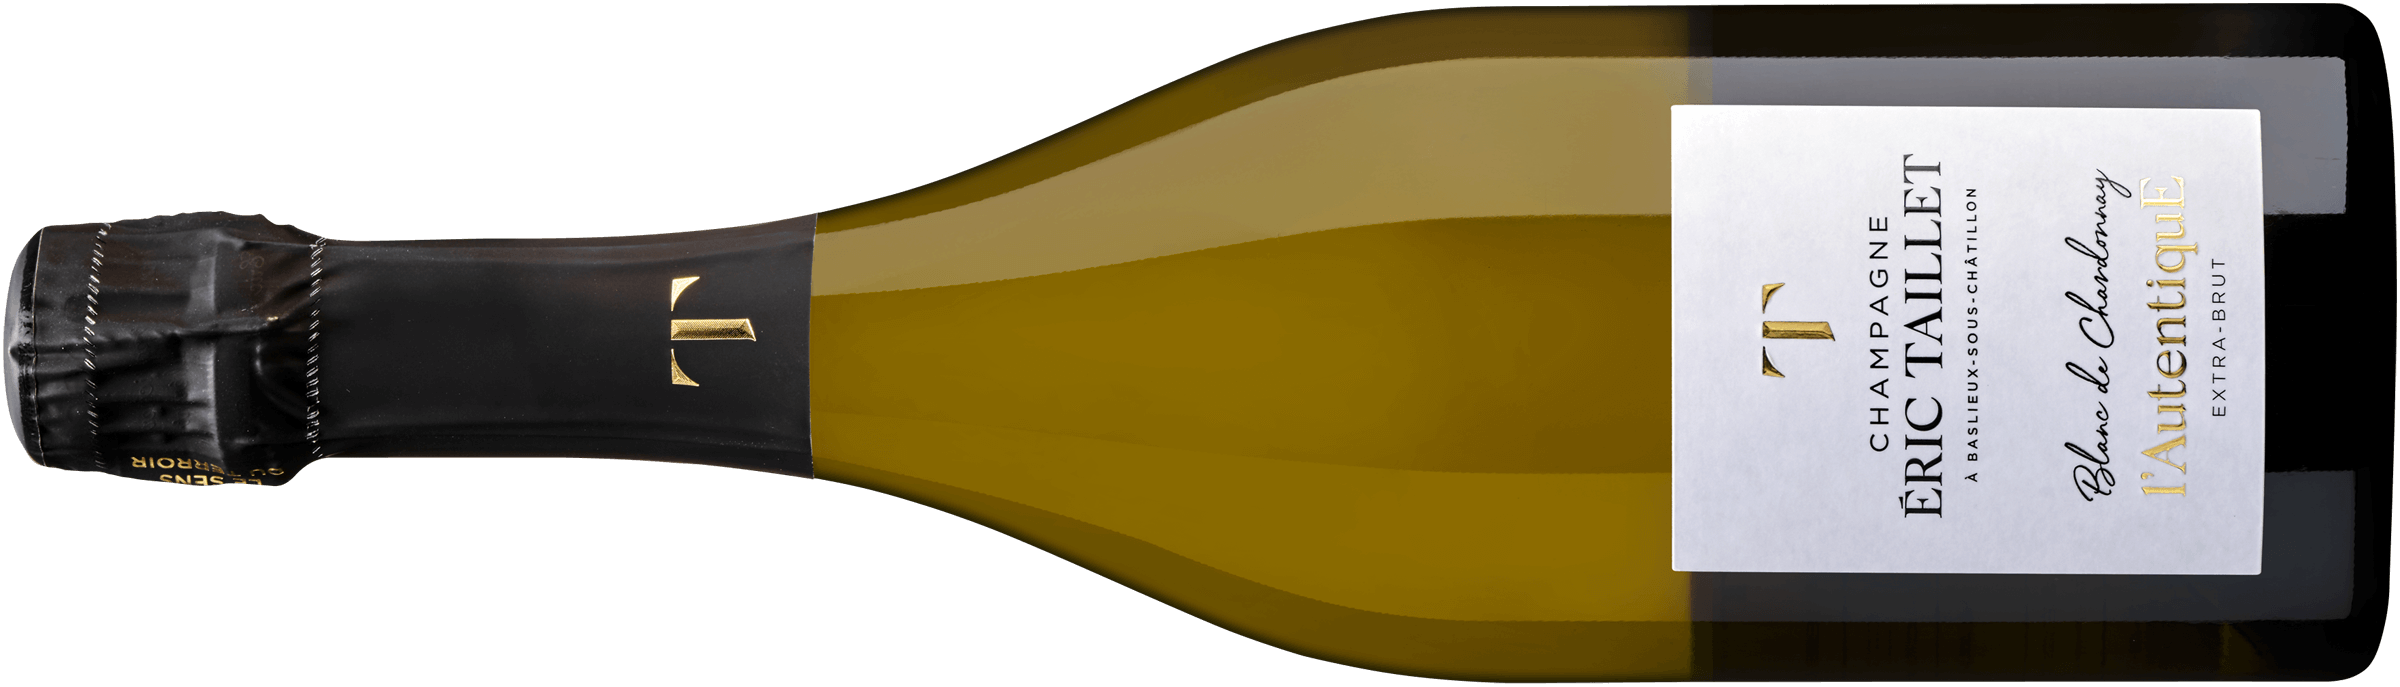 Champagne AOC/b l'Autentique Blanc de Chardonnay Extra Brut